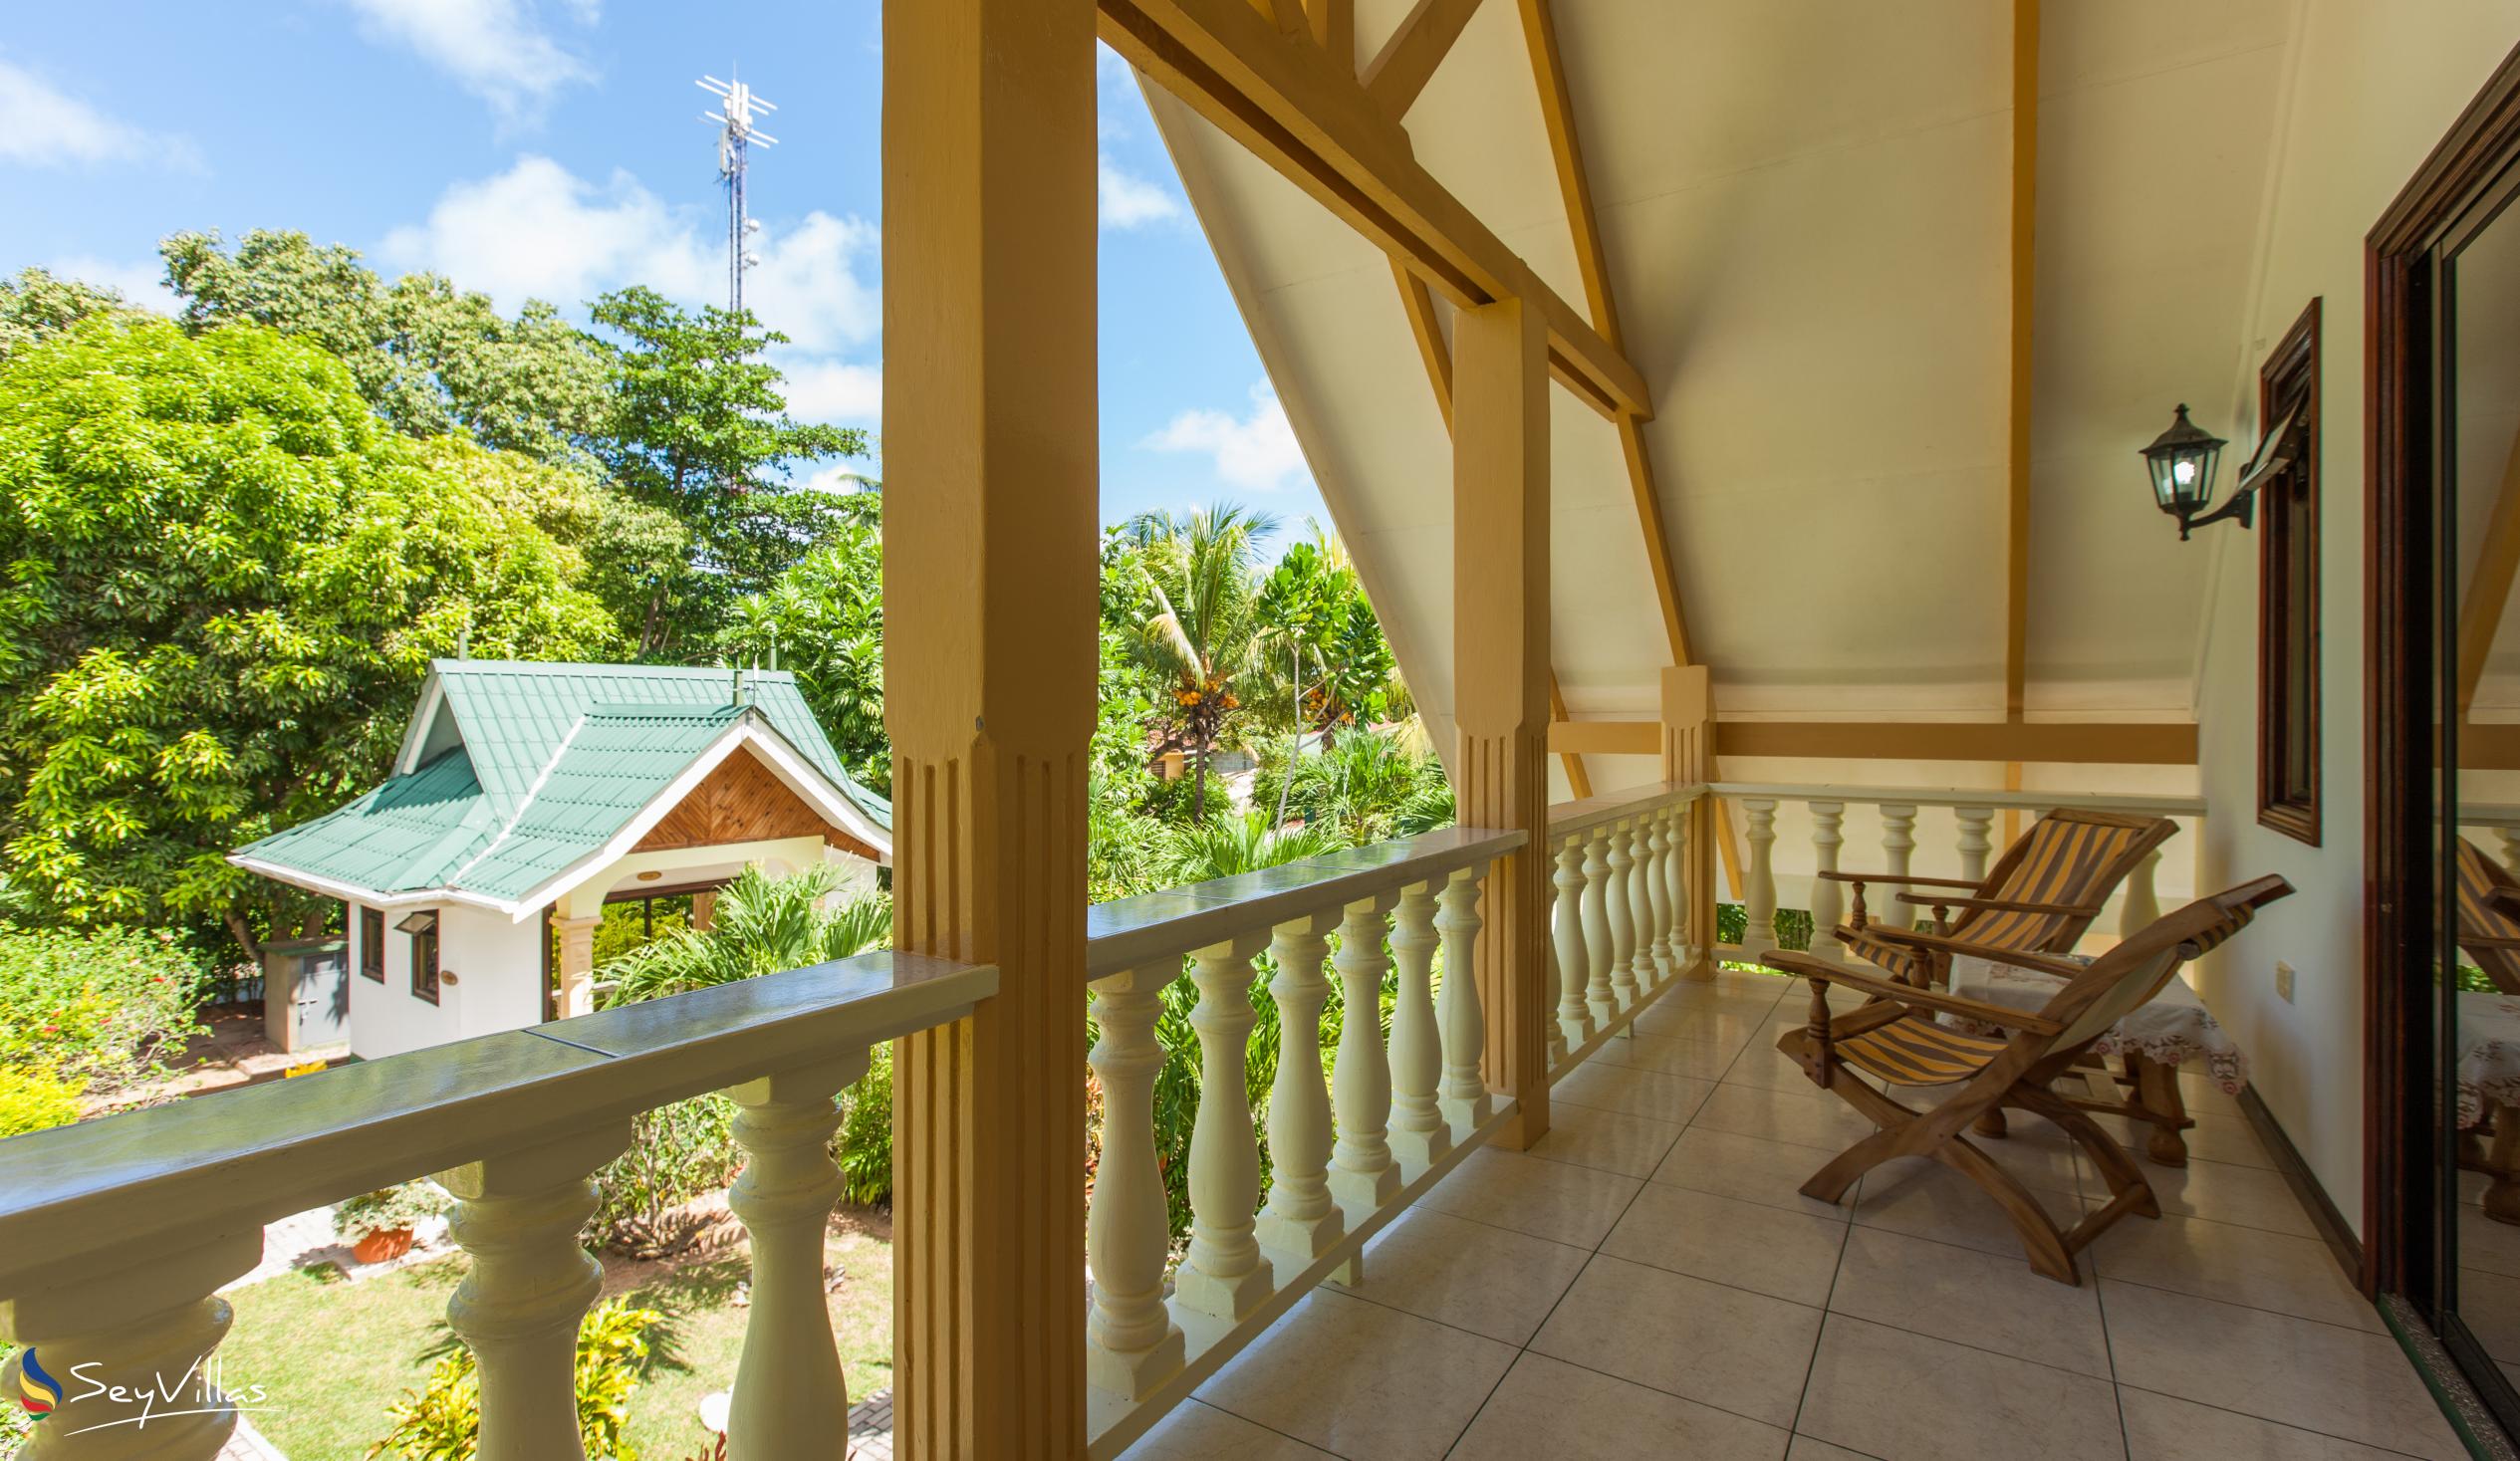 Photo 77: Chalets d'Anse Réunion - Villa Cola / Villa Soso - La Digue (Seychelles)